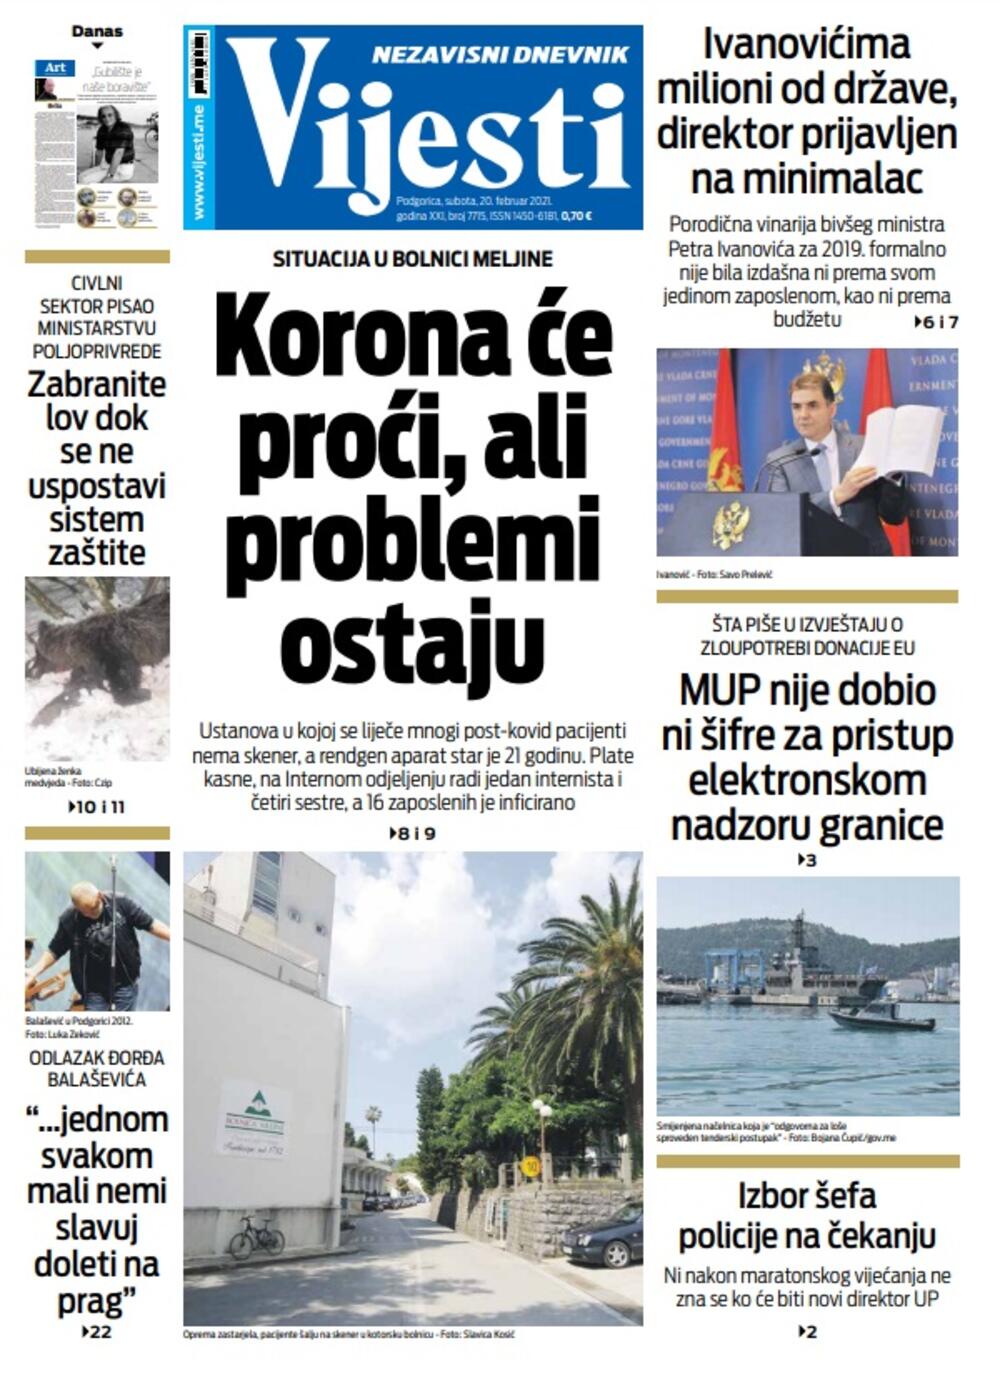 Naslovna strana "Vijesti" za 20.2.2021., Foto: Vijesti